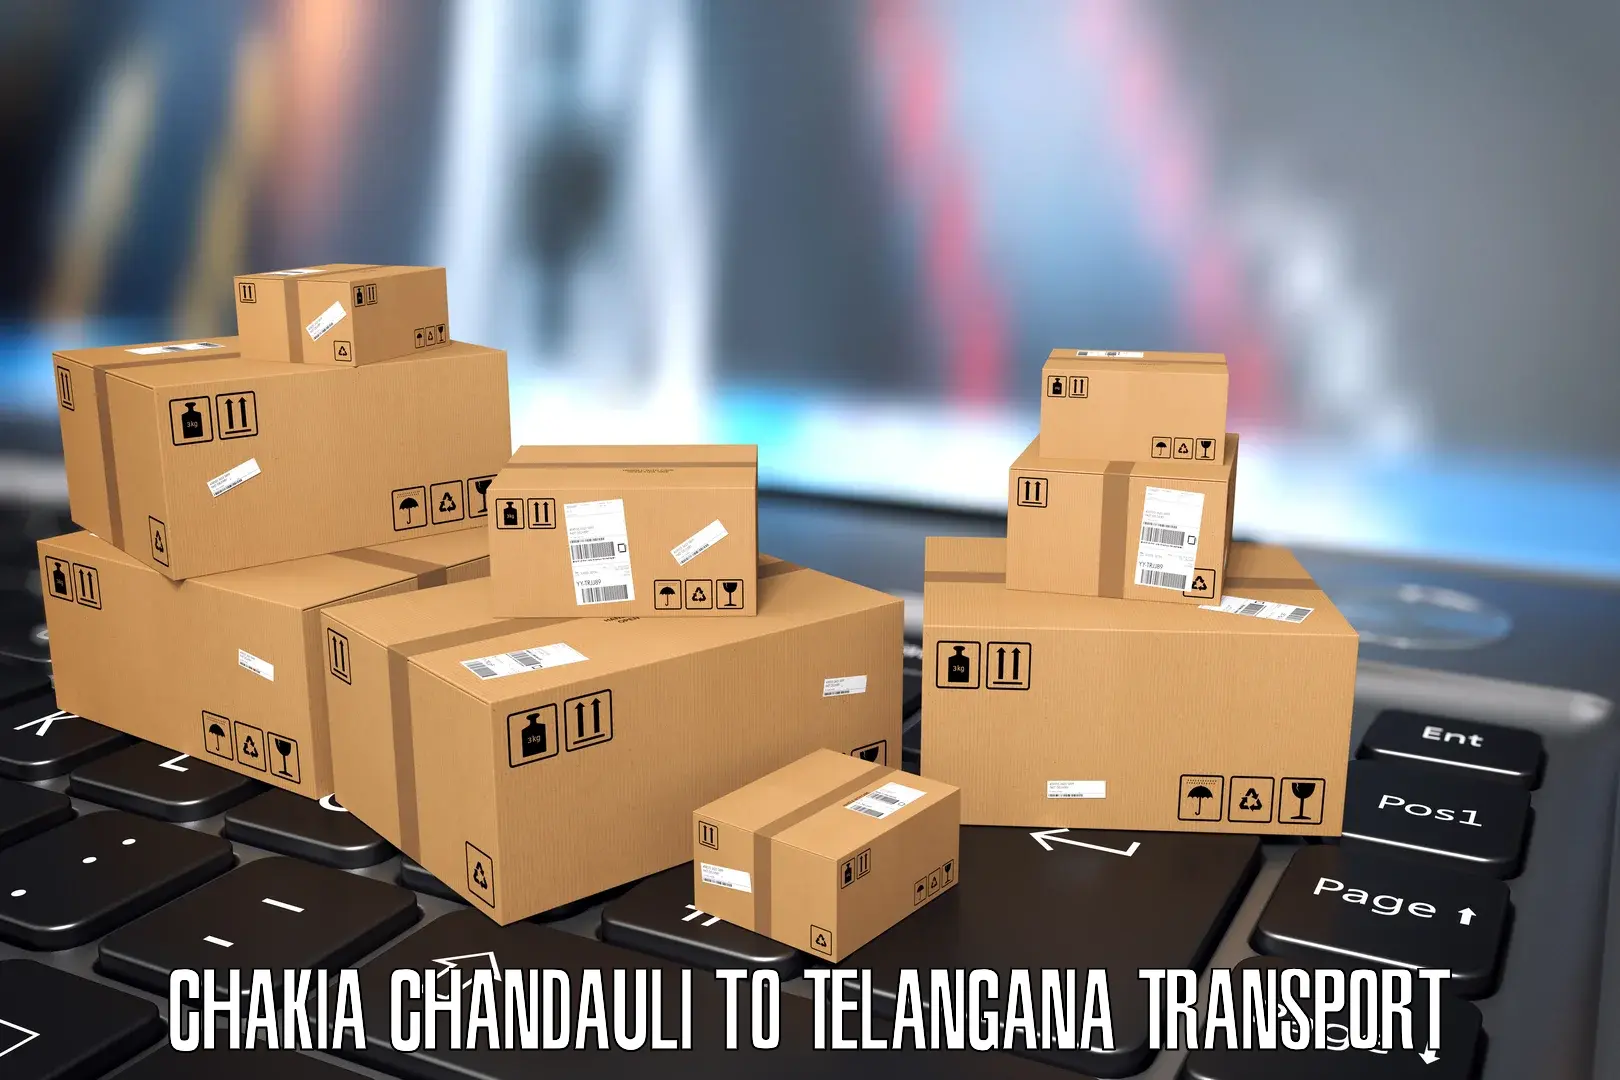 Daily transport service Chakia Chandauli to Tadvai